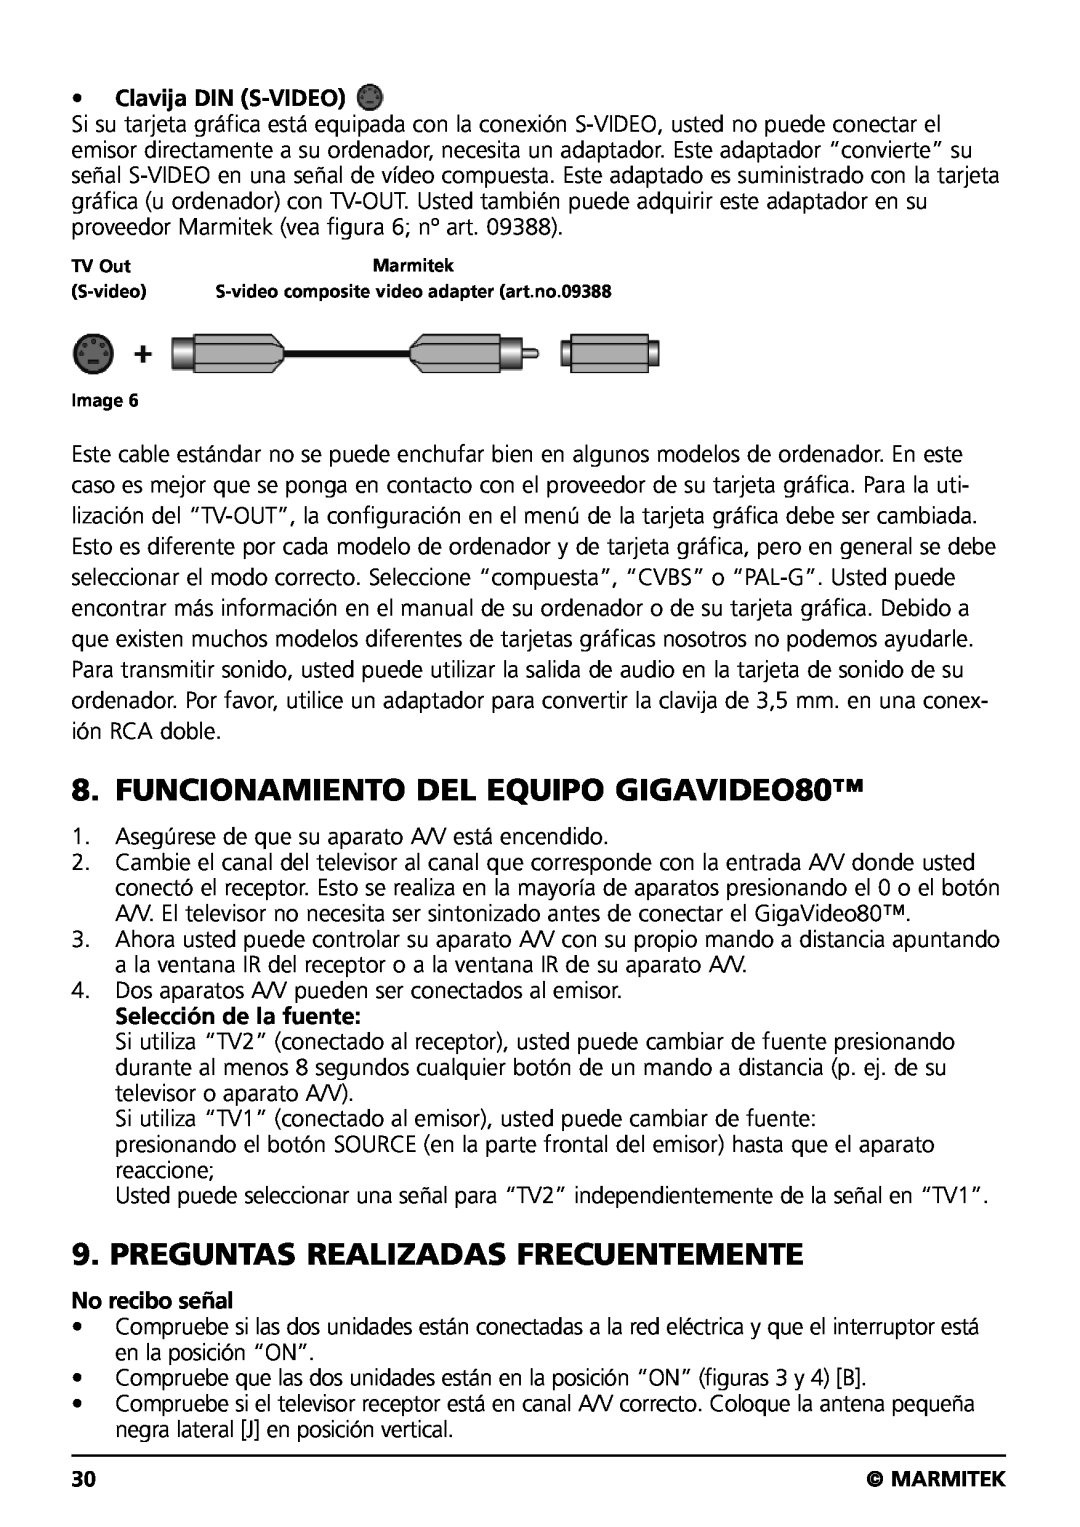 Marmitek user manual FUNCIONAMIENTO DEL EQUIPO GIGAVIDEO80, Preguntas Realizadas Frecuentemente, Clavija DIN S-VIDEO 